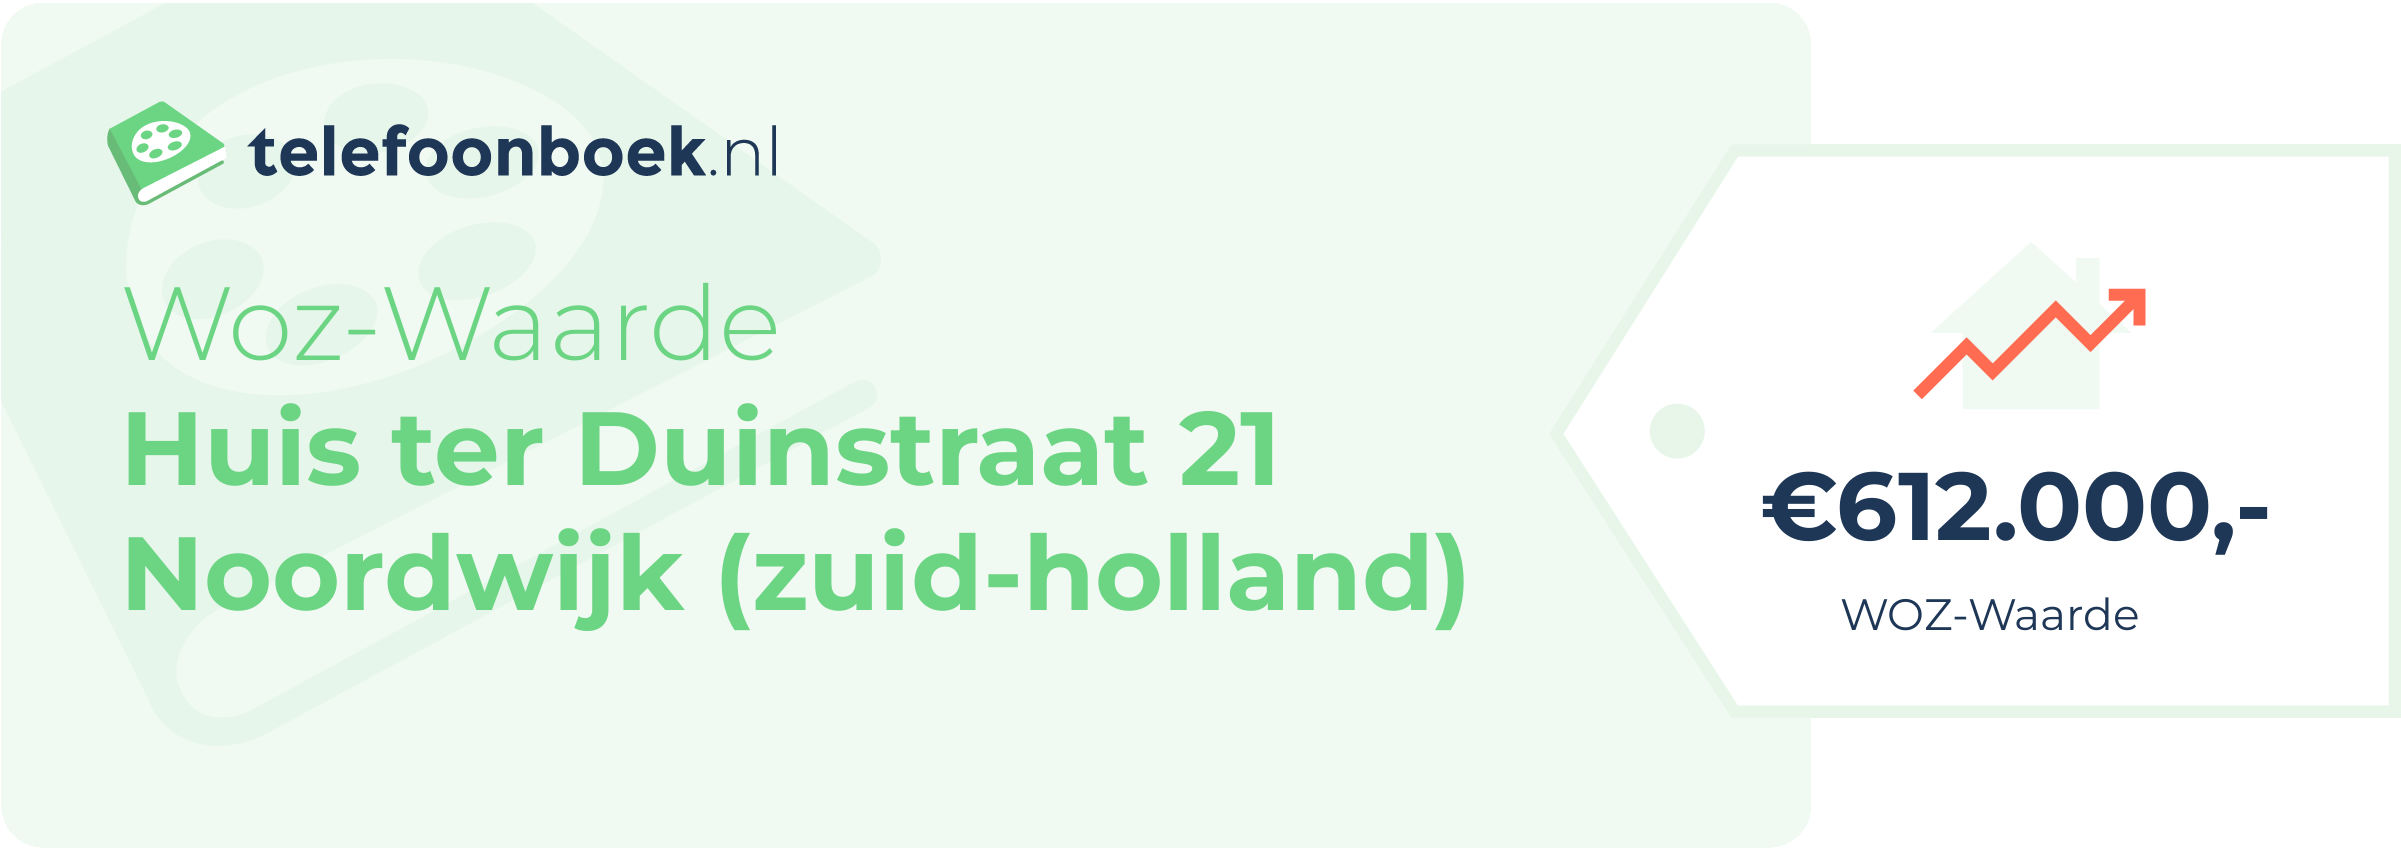 WOZ-waarde Huis Ter Duinstraat 21 Noordwijk (Zuid-Holland)